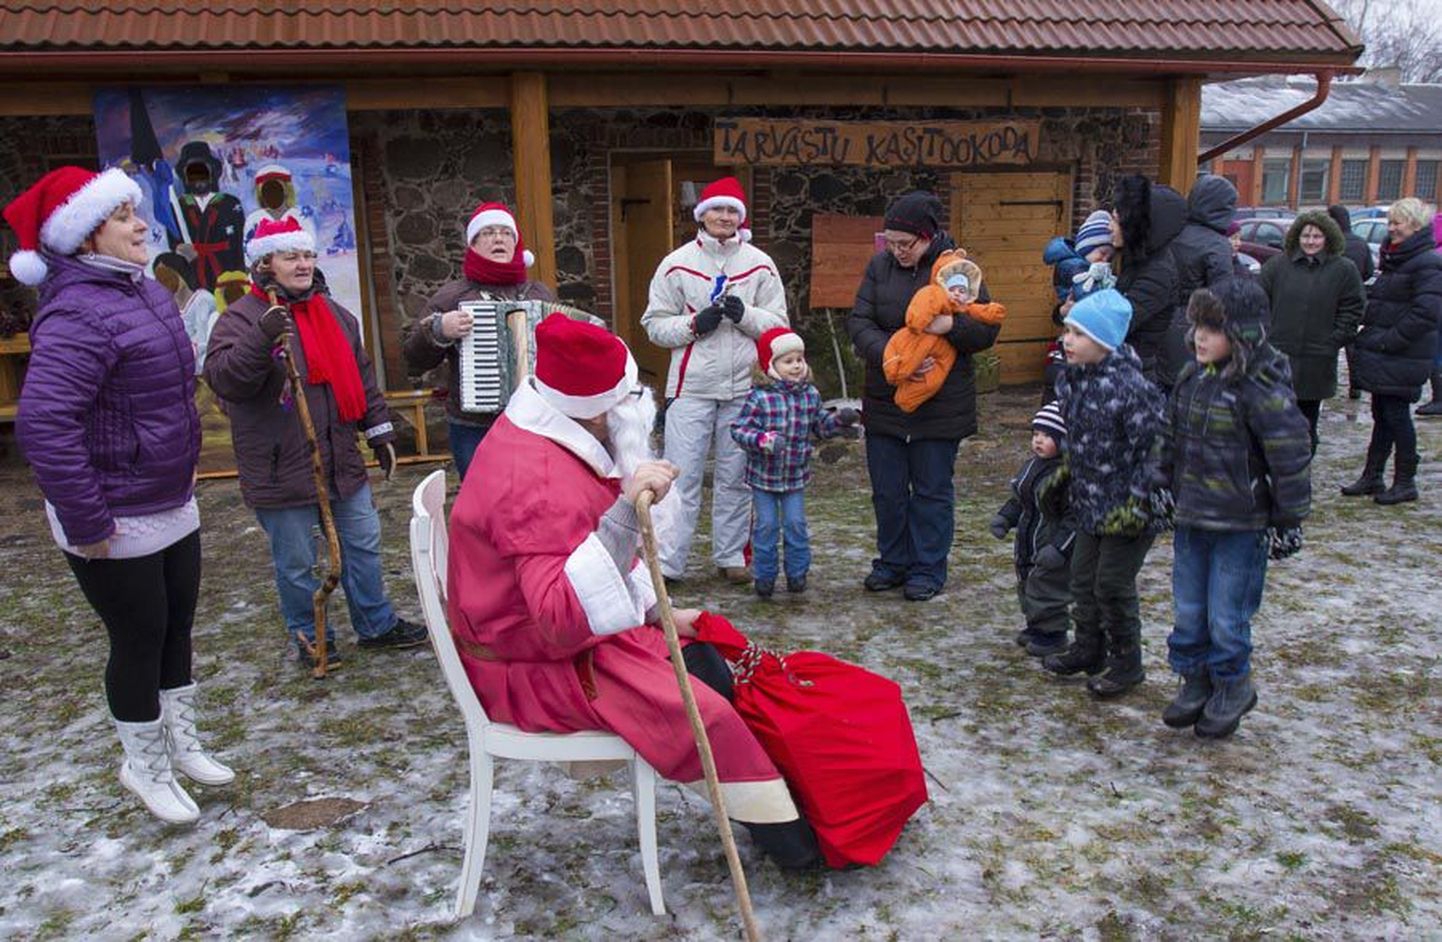 Eile ja üleeile korraldas Tarvastu käsitöökoda kohalikele põnnidele kohtumise jõuluvanaga, hobuvankris veeremise ja töökojas meisterdamise. Samasuguseid ettevõtmisi on maakonnas veelgi.